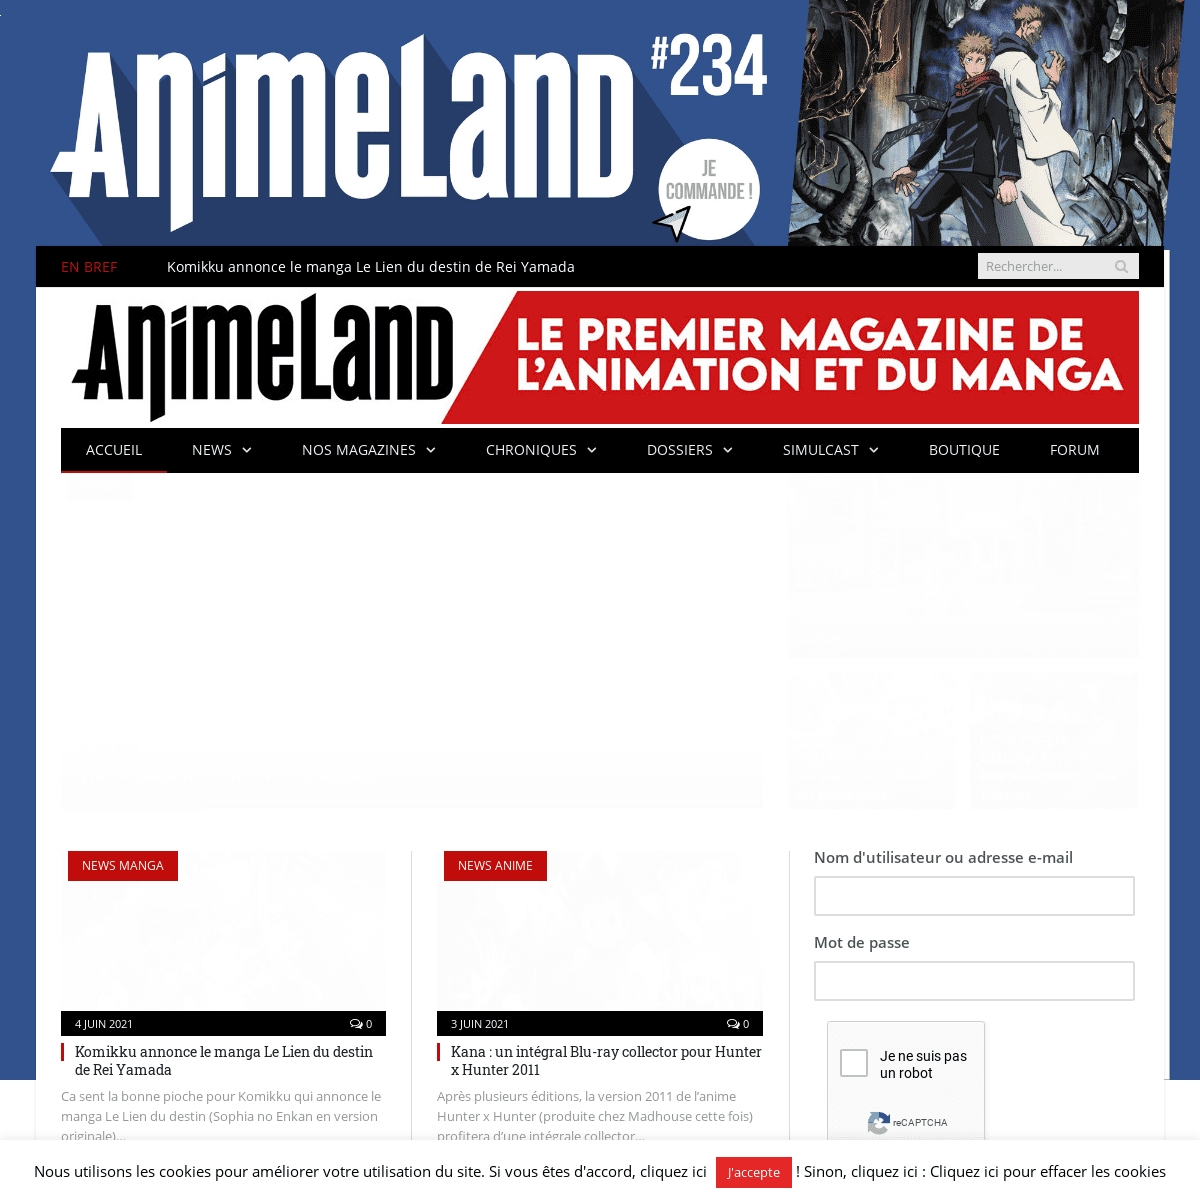 A complete backup of https://animeland.com